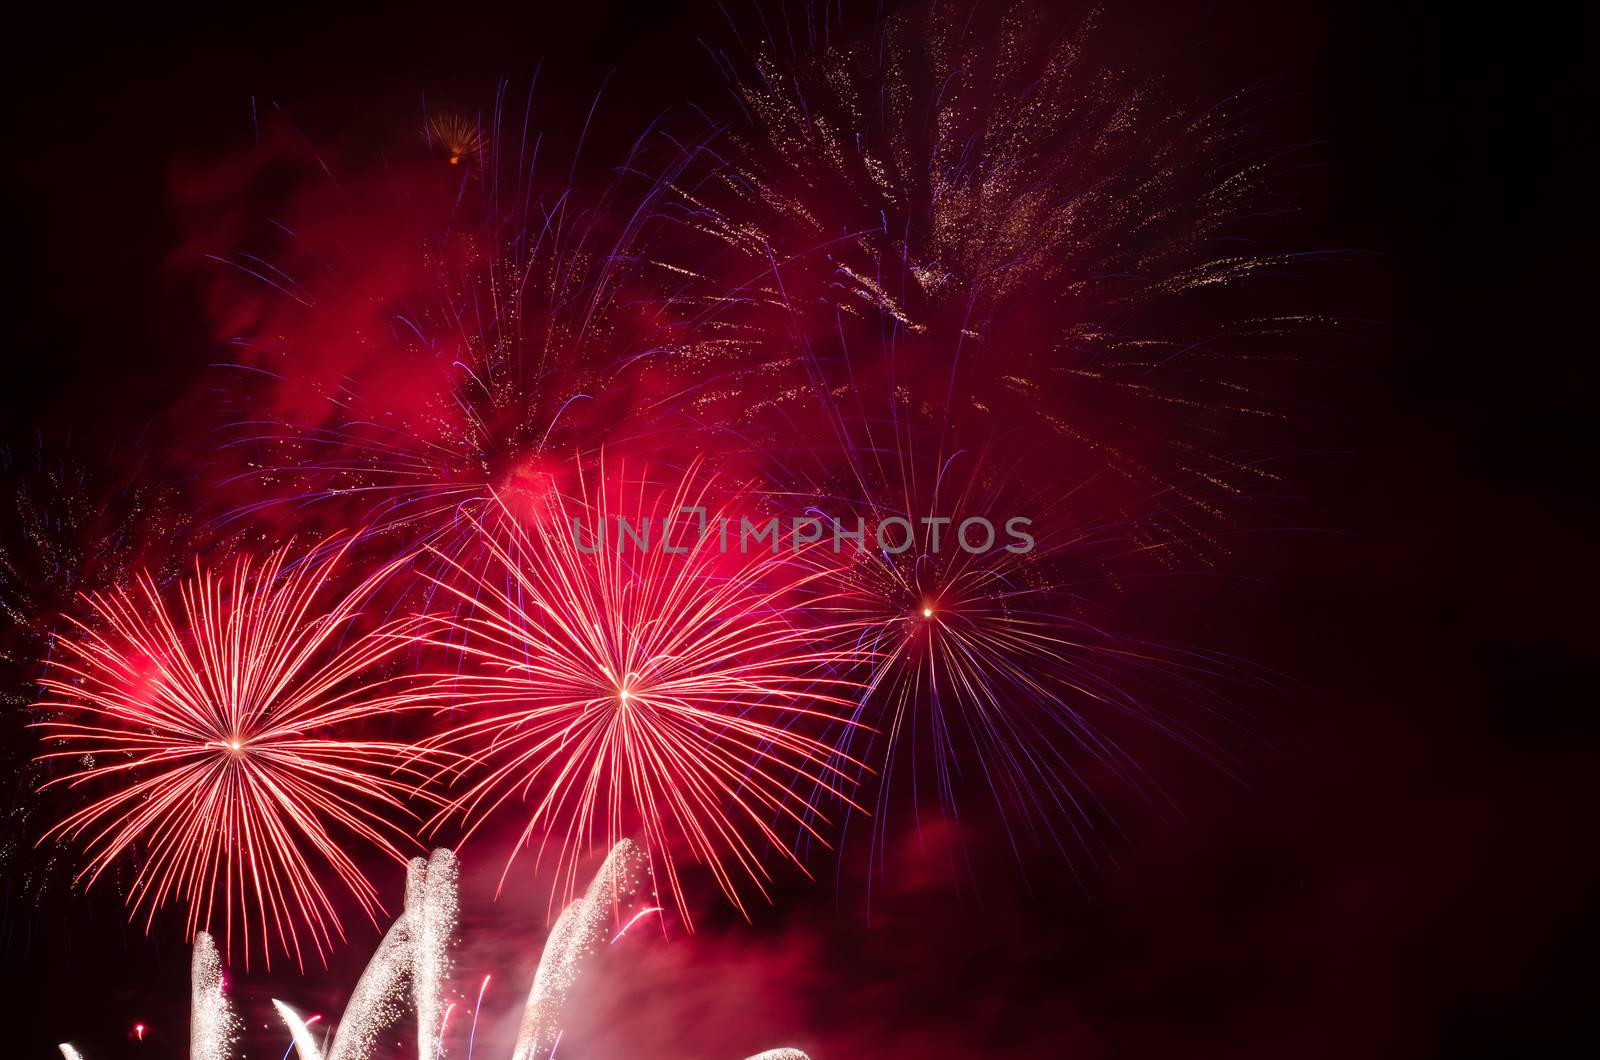 fireworks by sarkao